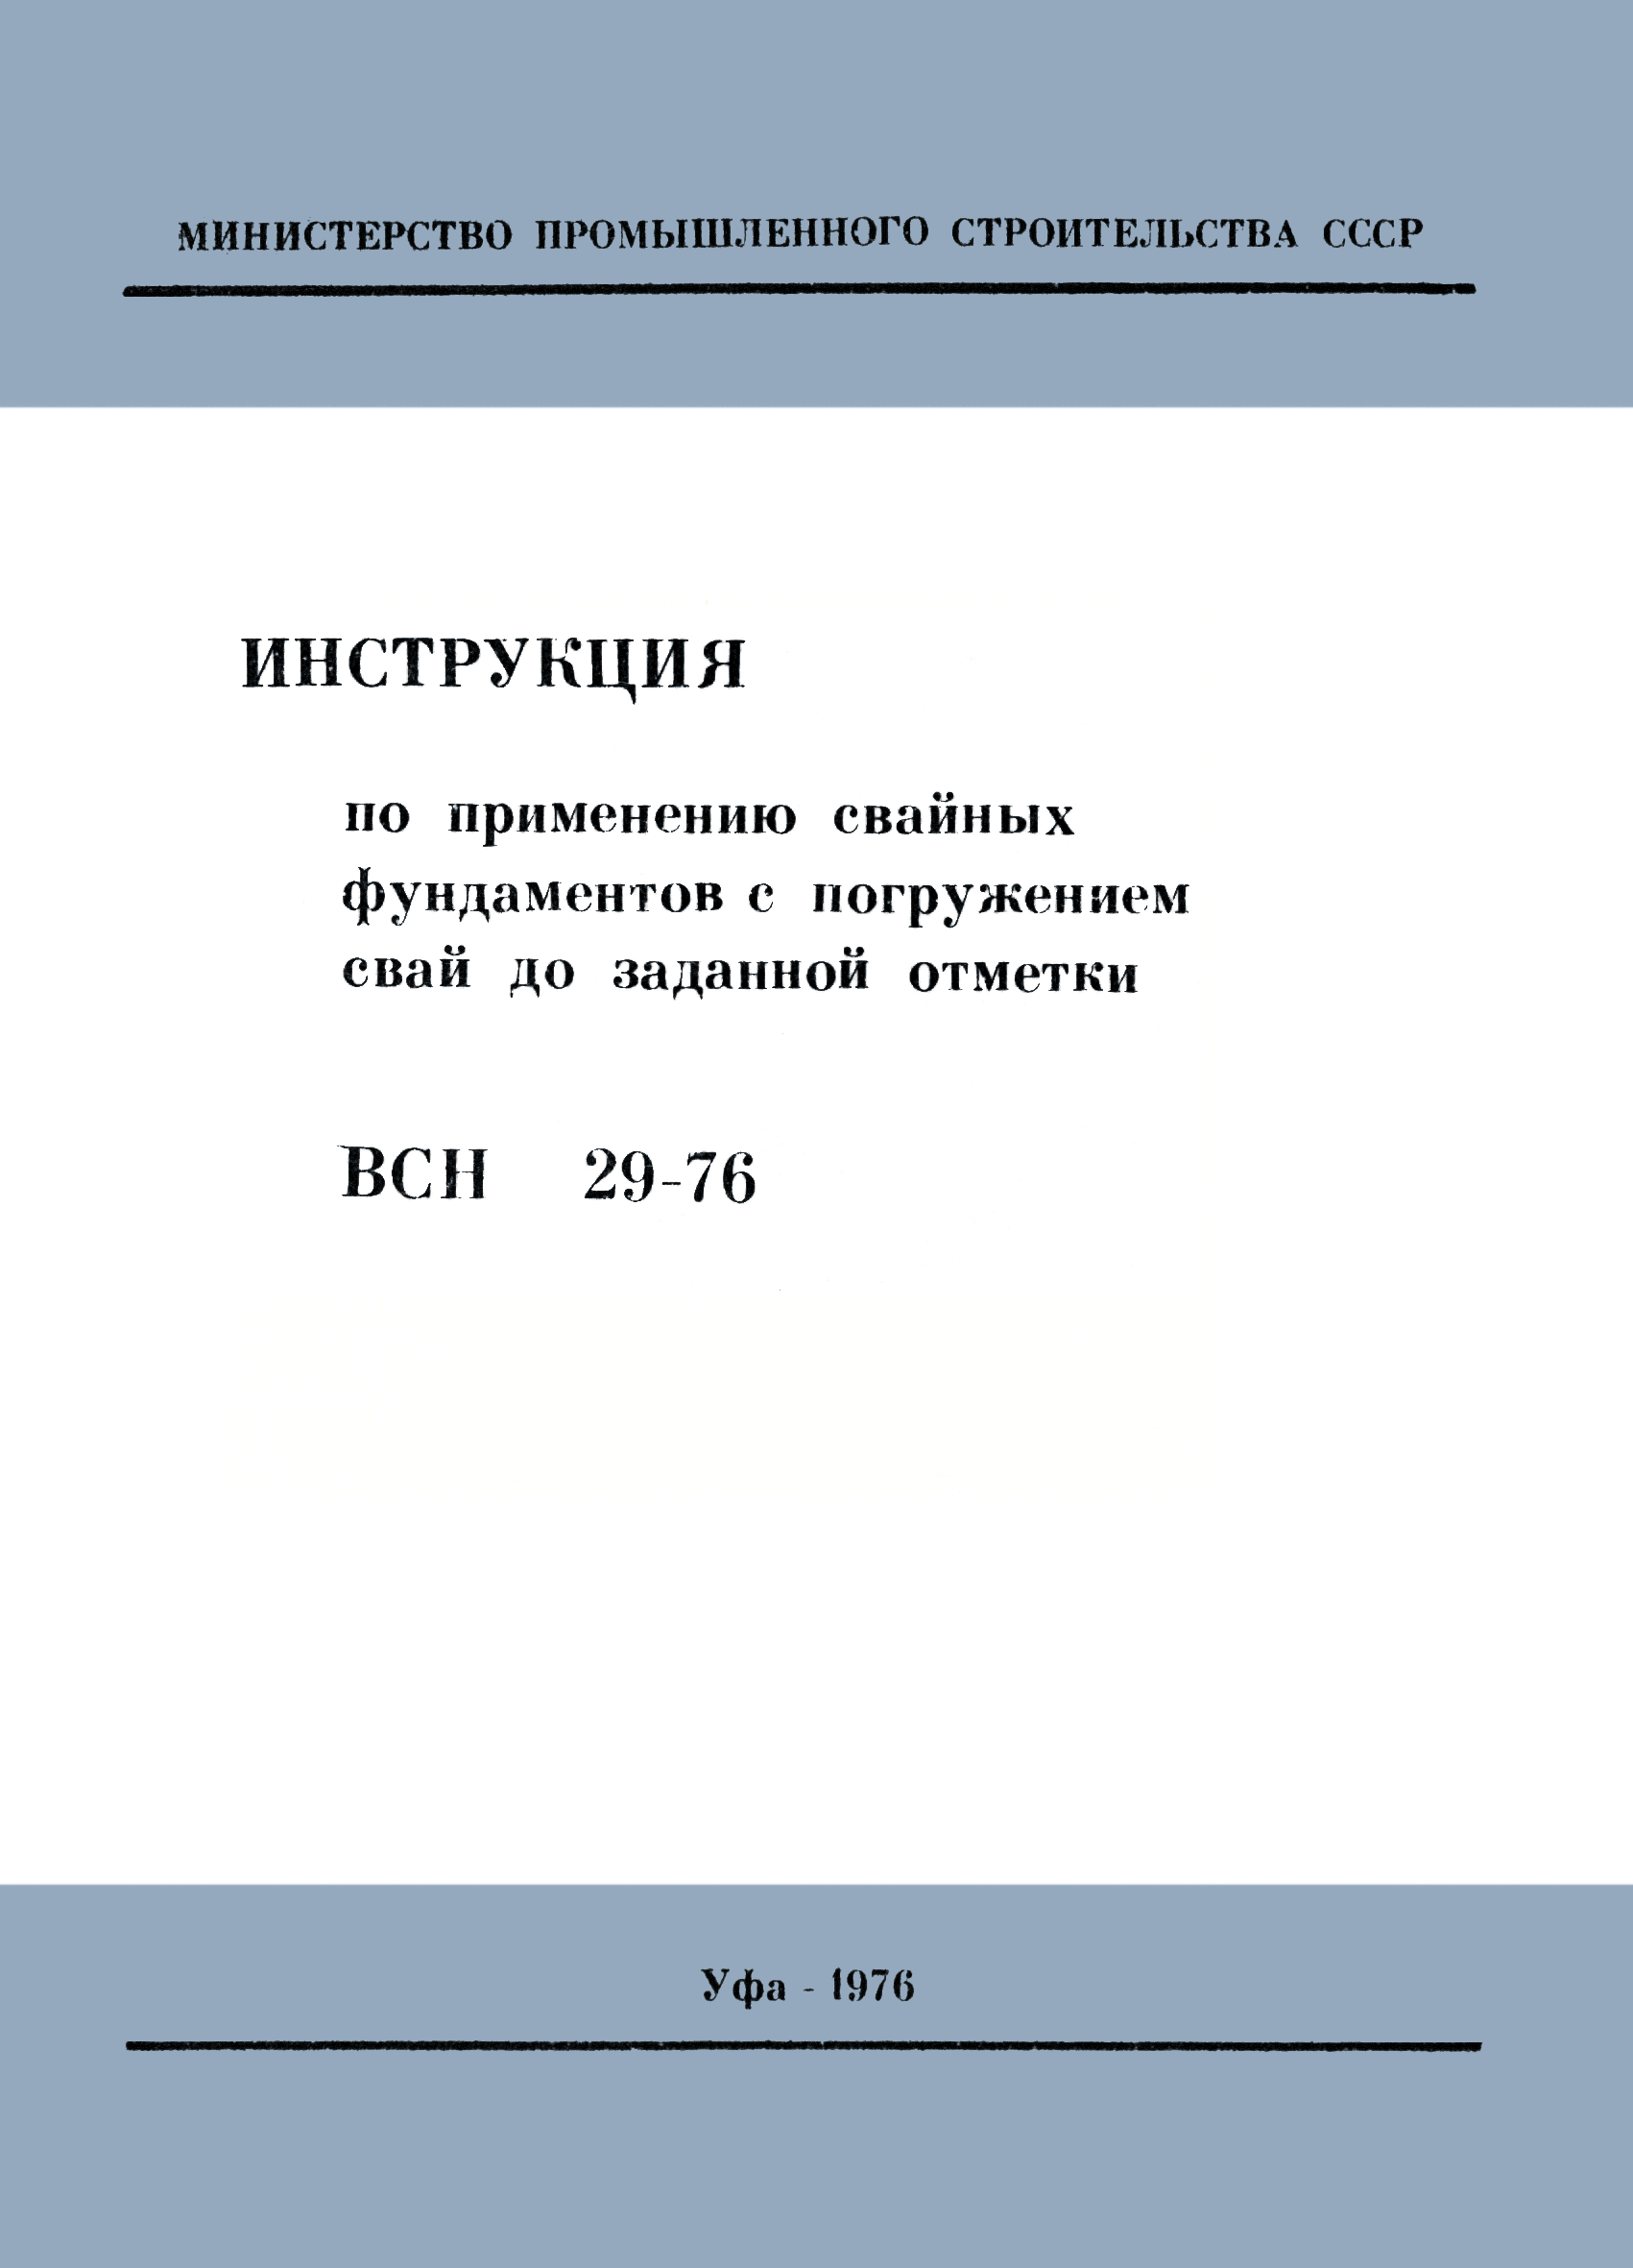 ВСН 29-76